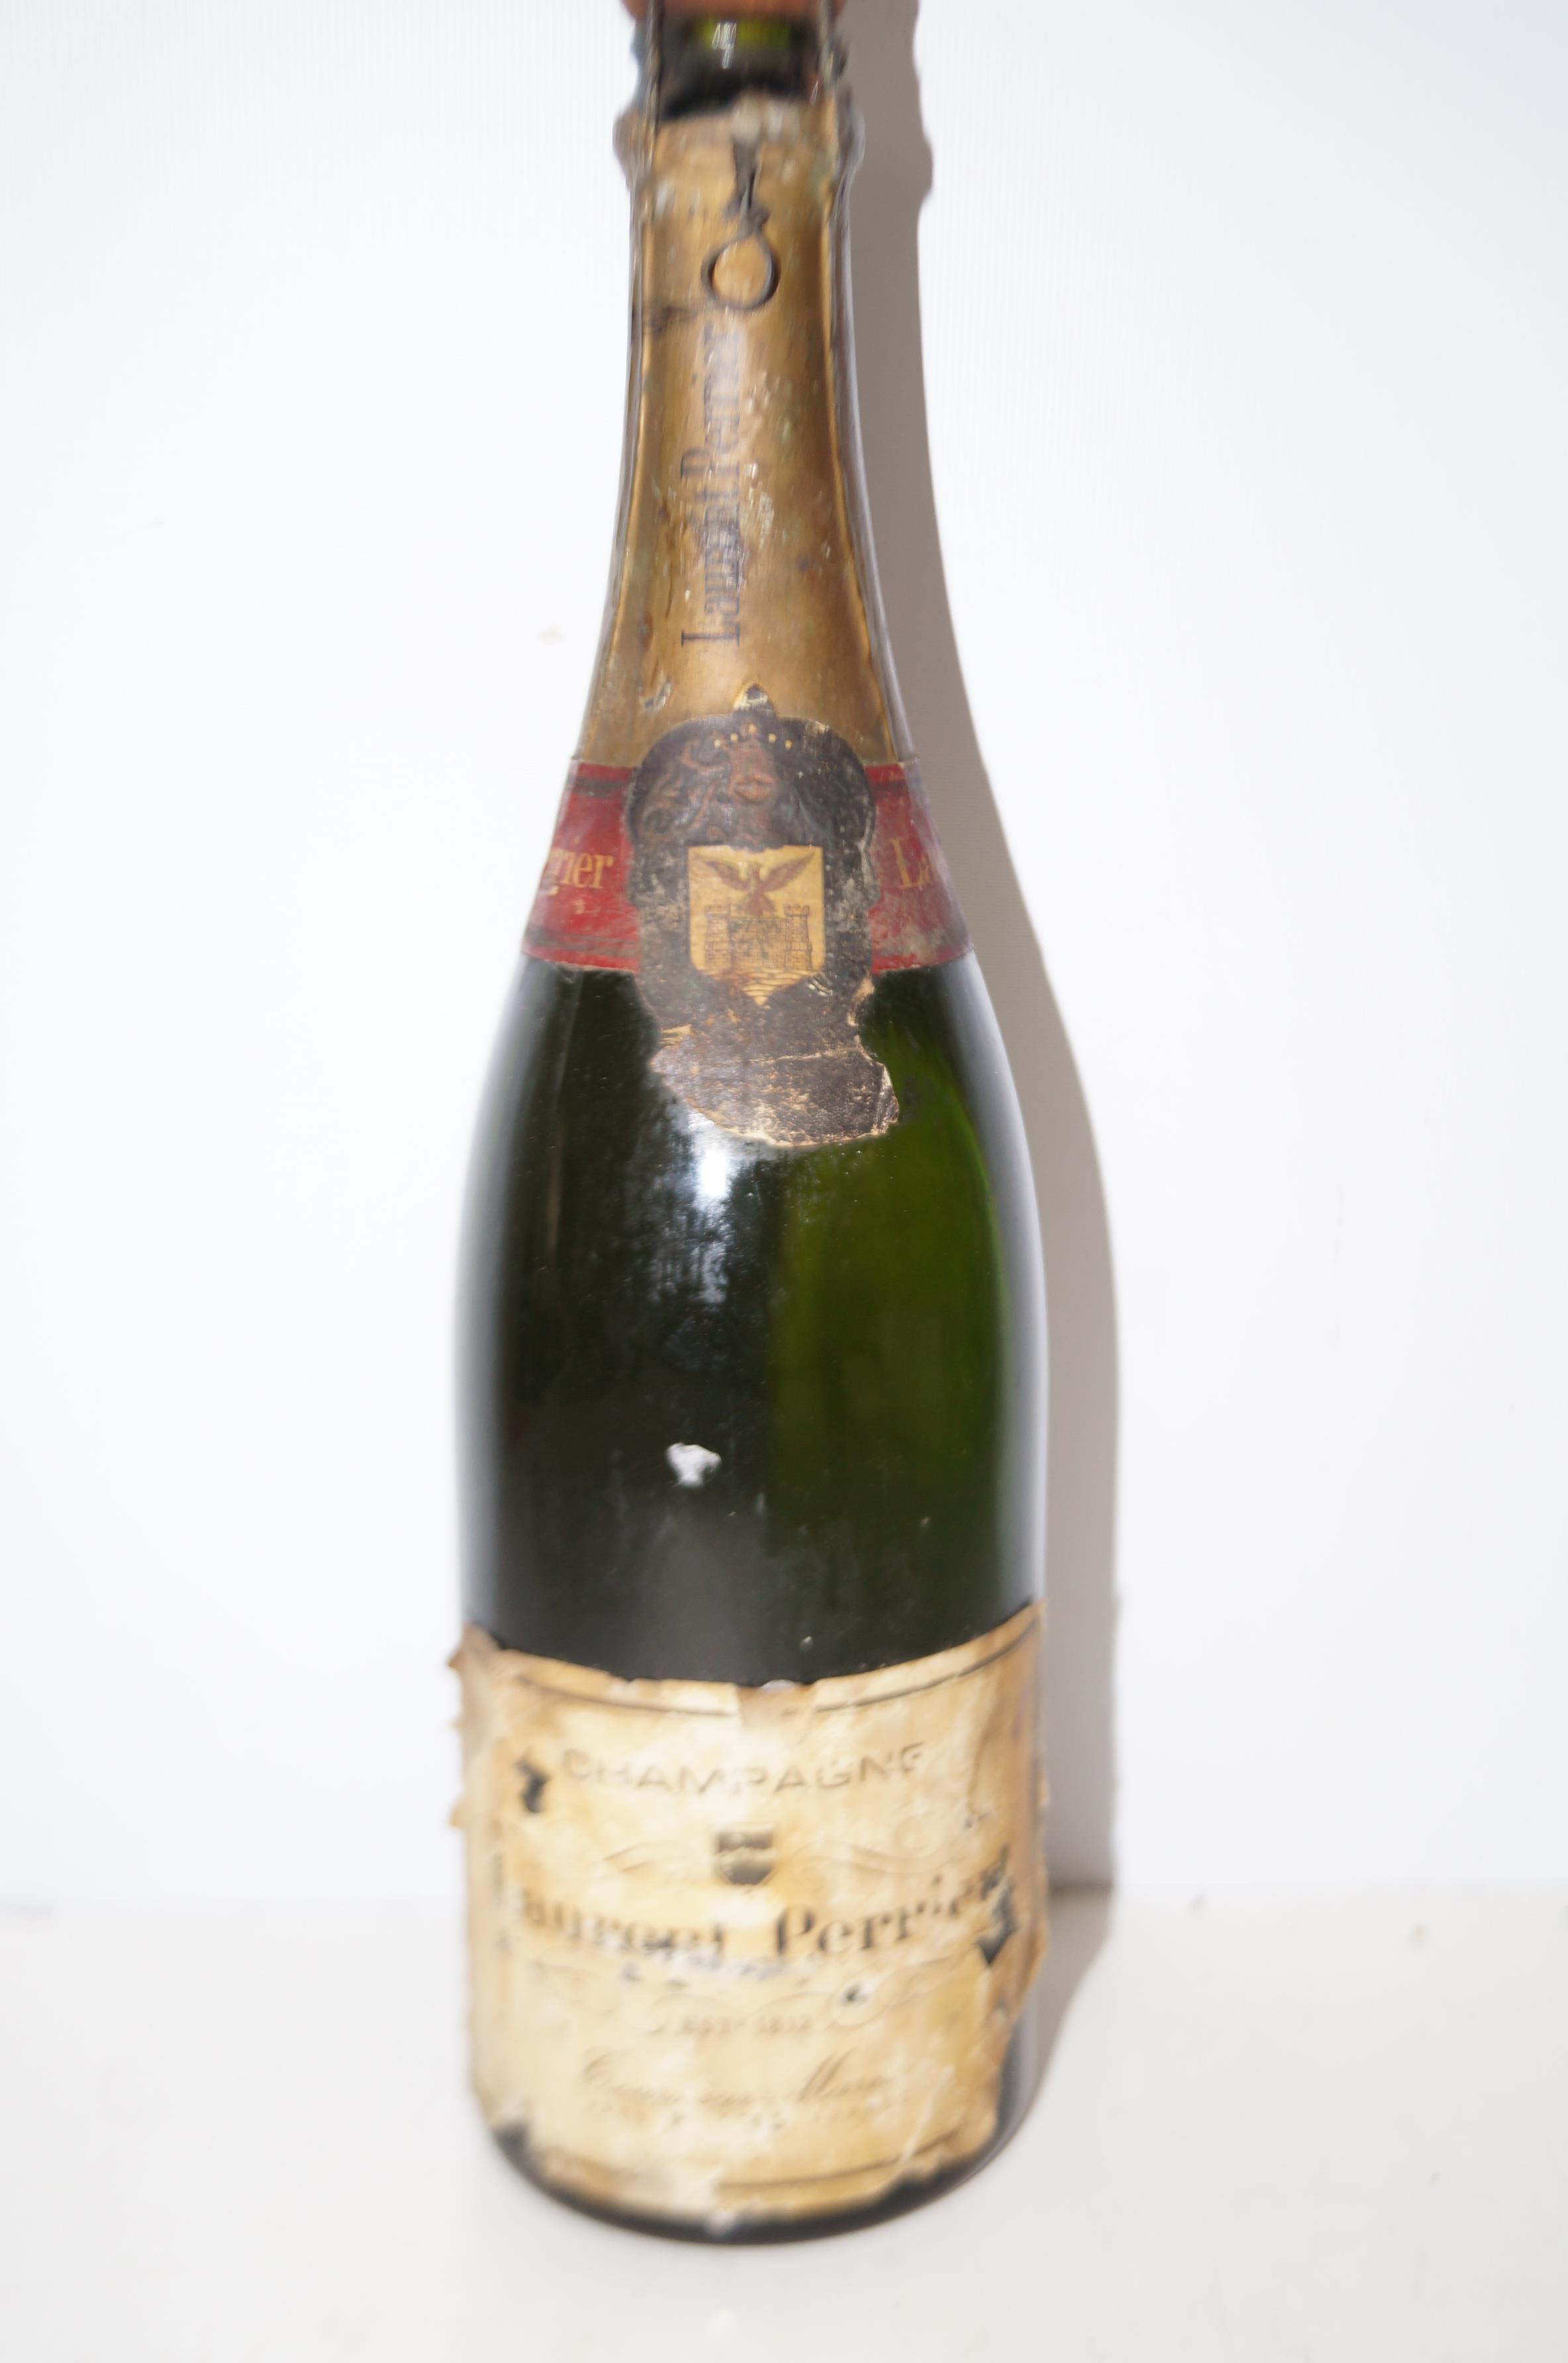 Bottle of vintage Laurent Perrier champagne